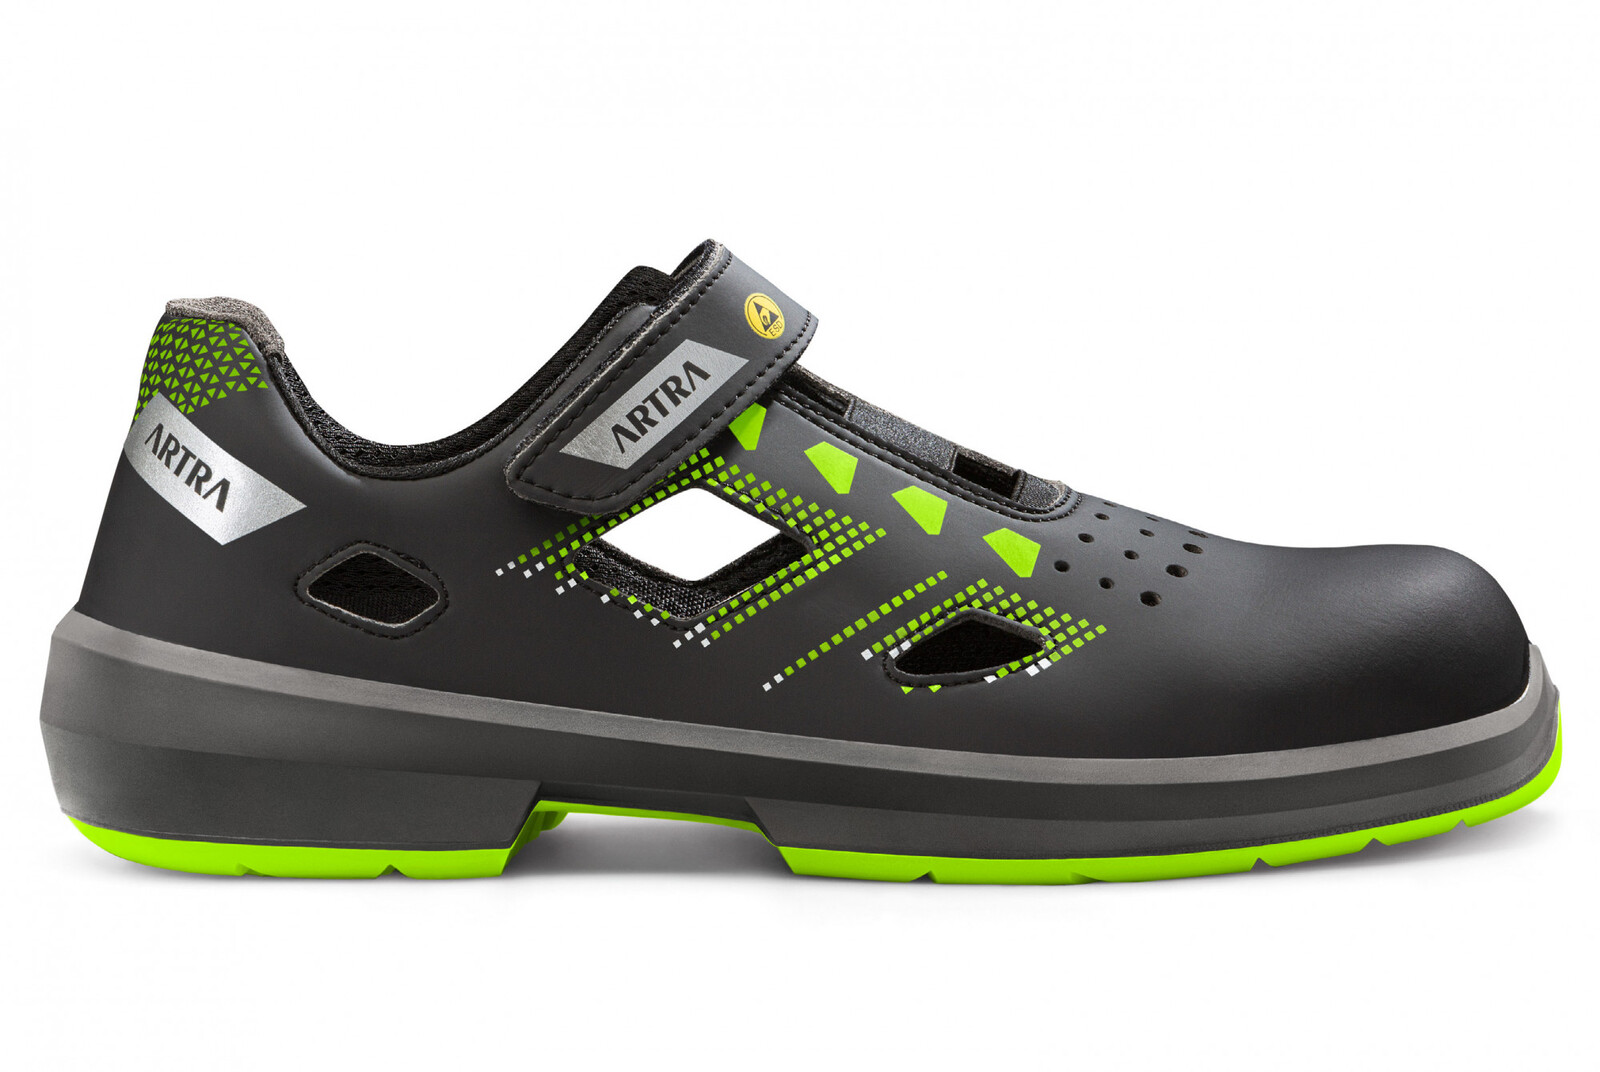 Bezpečnostné sandále Artra Arzo 805 678080 S1 SRC ESD MF - veľkosť: 48, farba: čierna/zelená